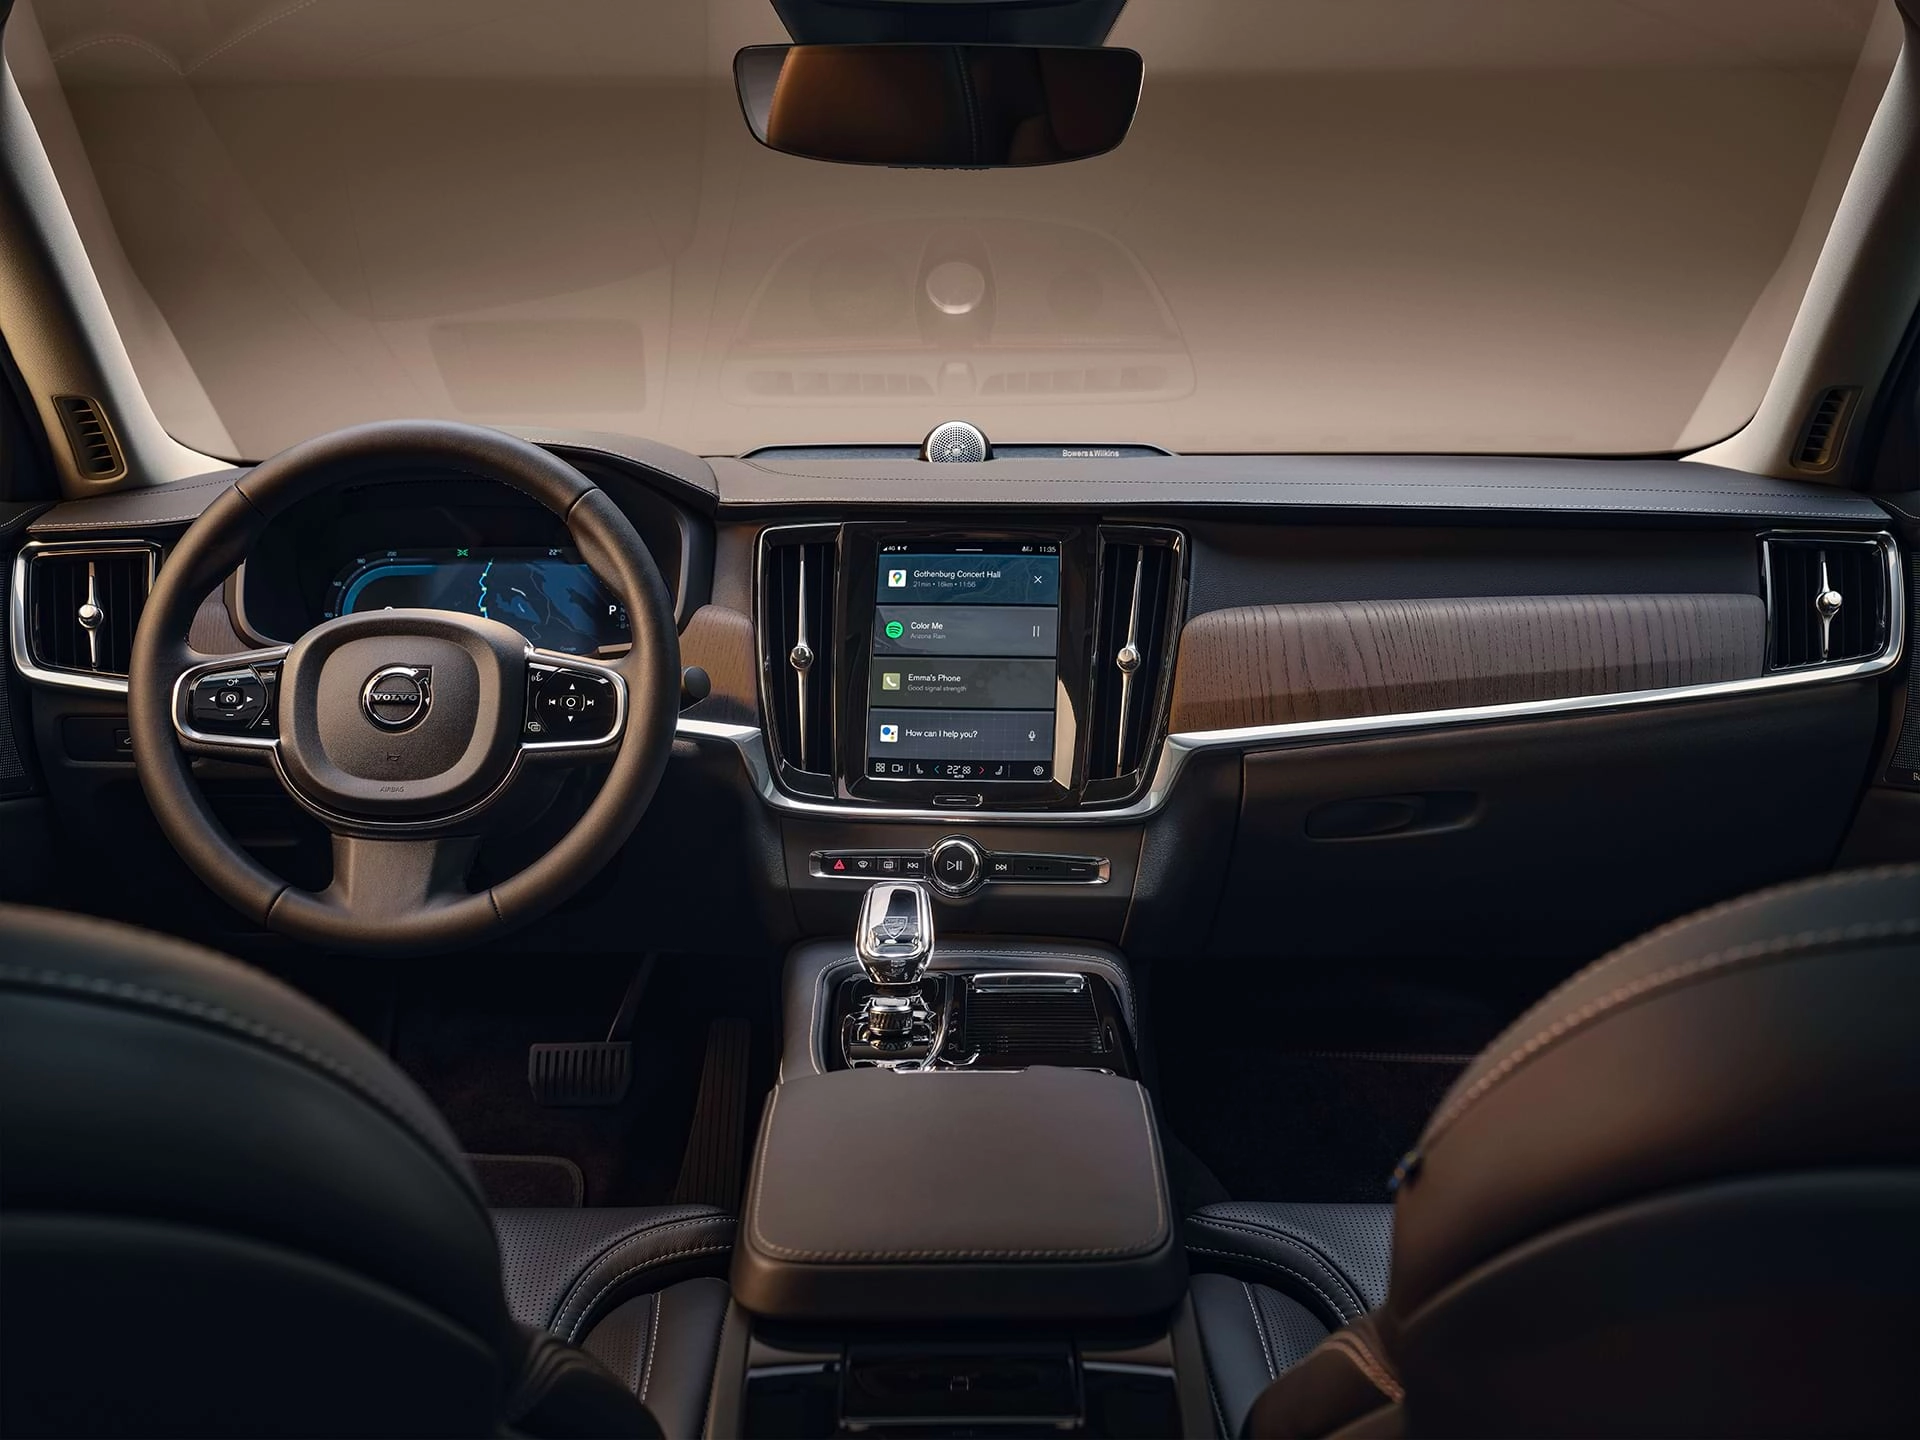 Tableau de bord, écran central, levier de vitesses, écran du conducteur et volant d’une berline Volvo haut de gamme.